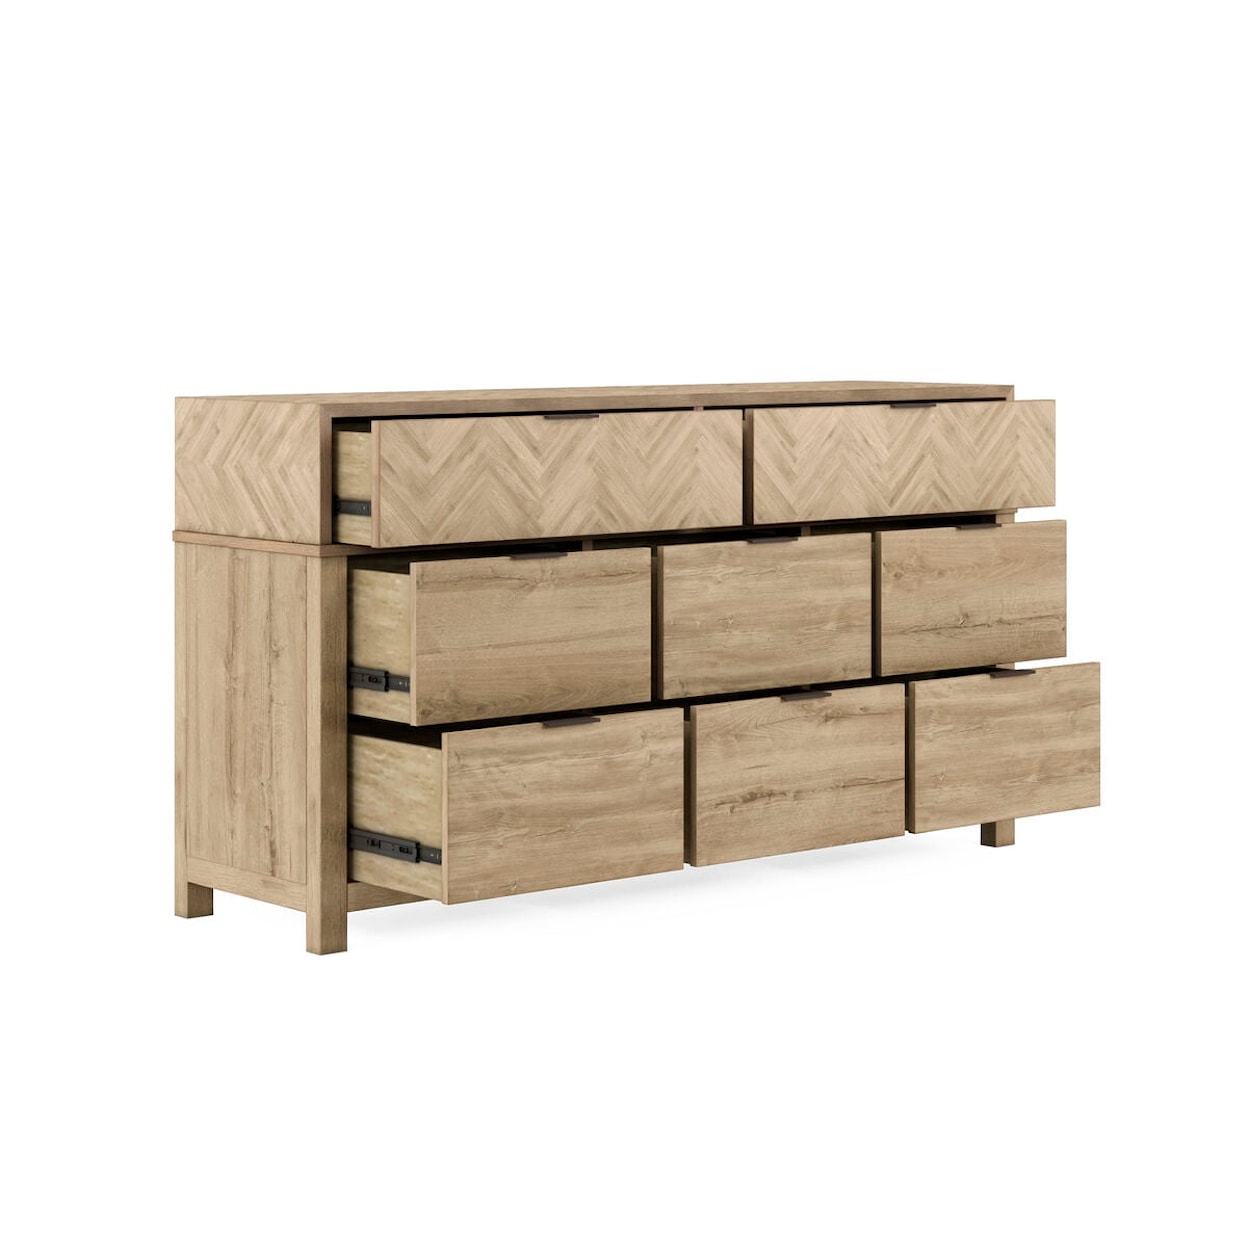 A.R.T. Furniture Inc 322 - Garrison Dresser